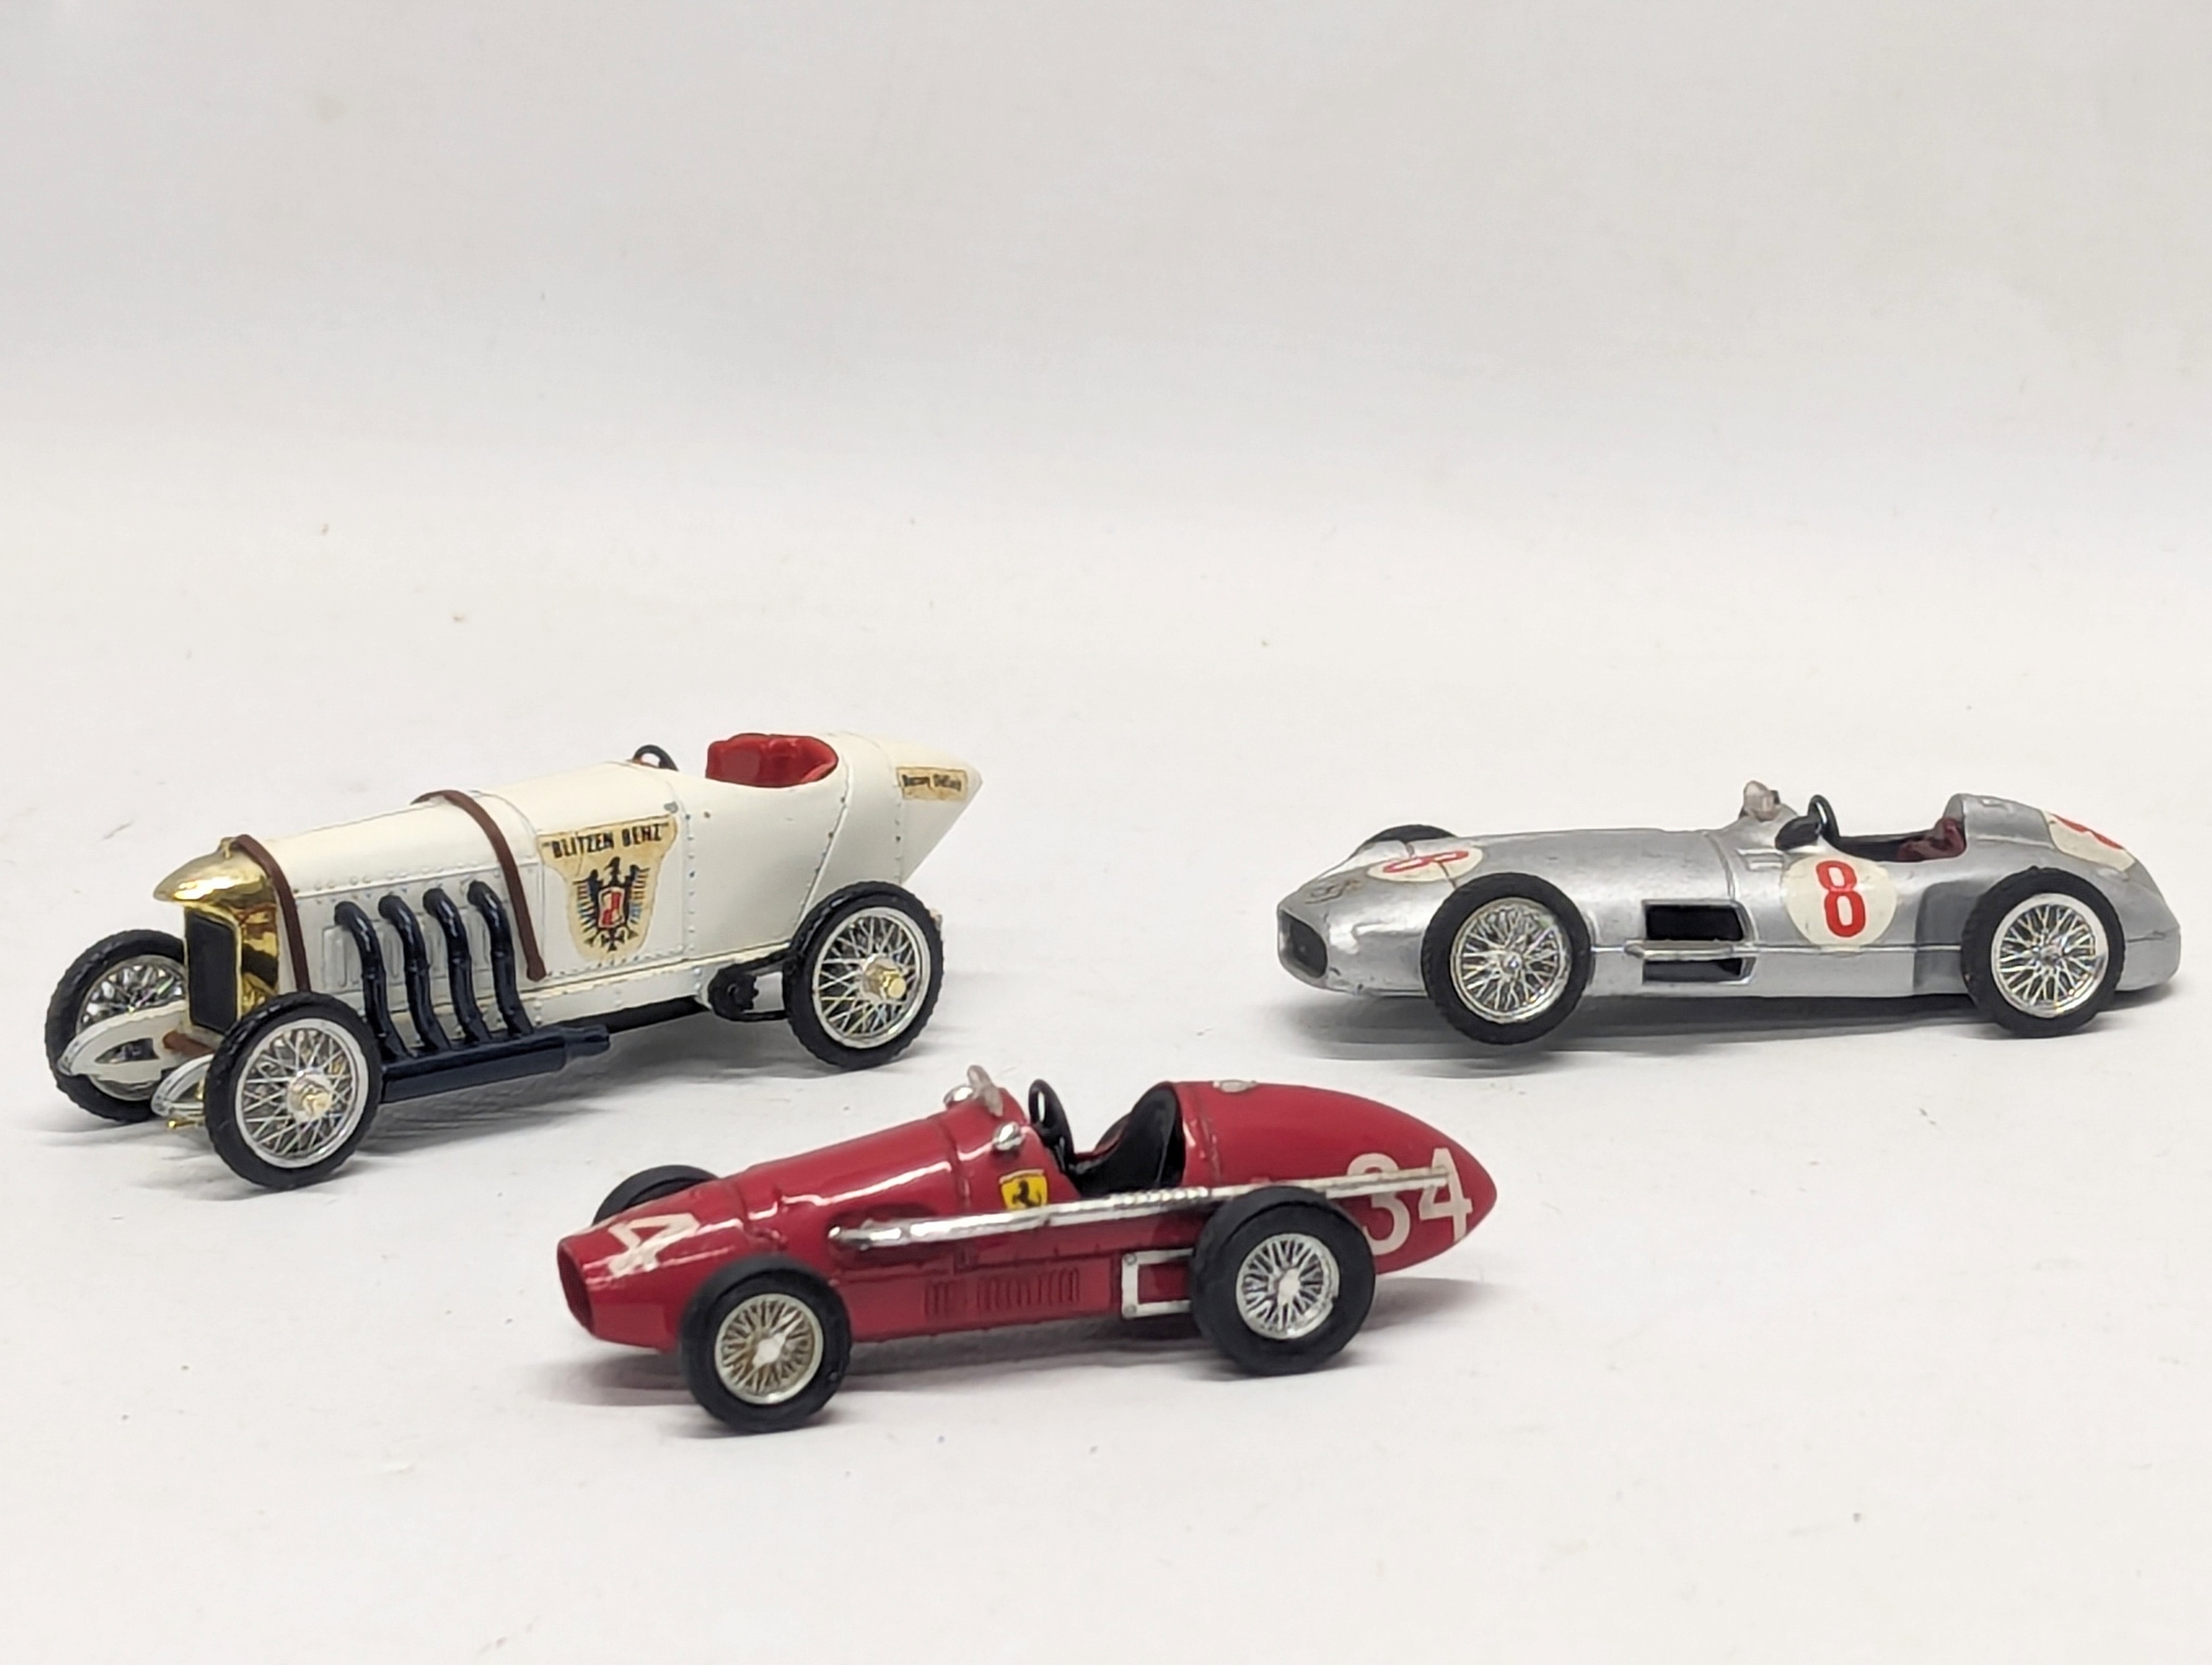 A collection of 3 Brumm model cars, including a Ferrari F2 500 1953, a Blitzen Benz Indianapolis